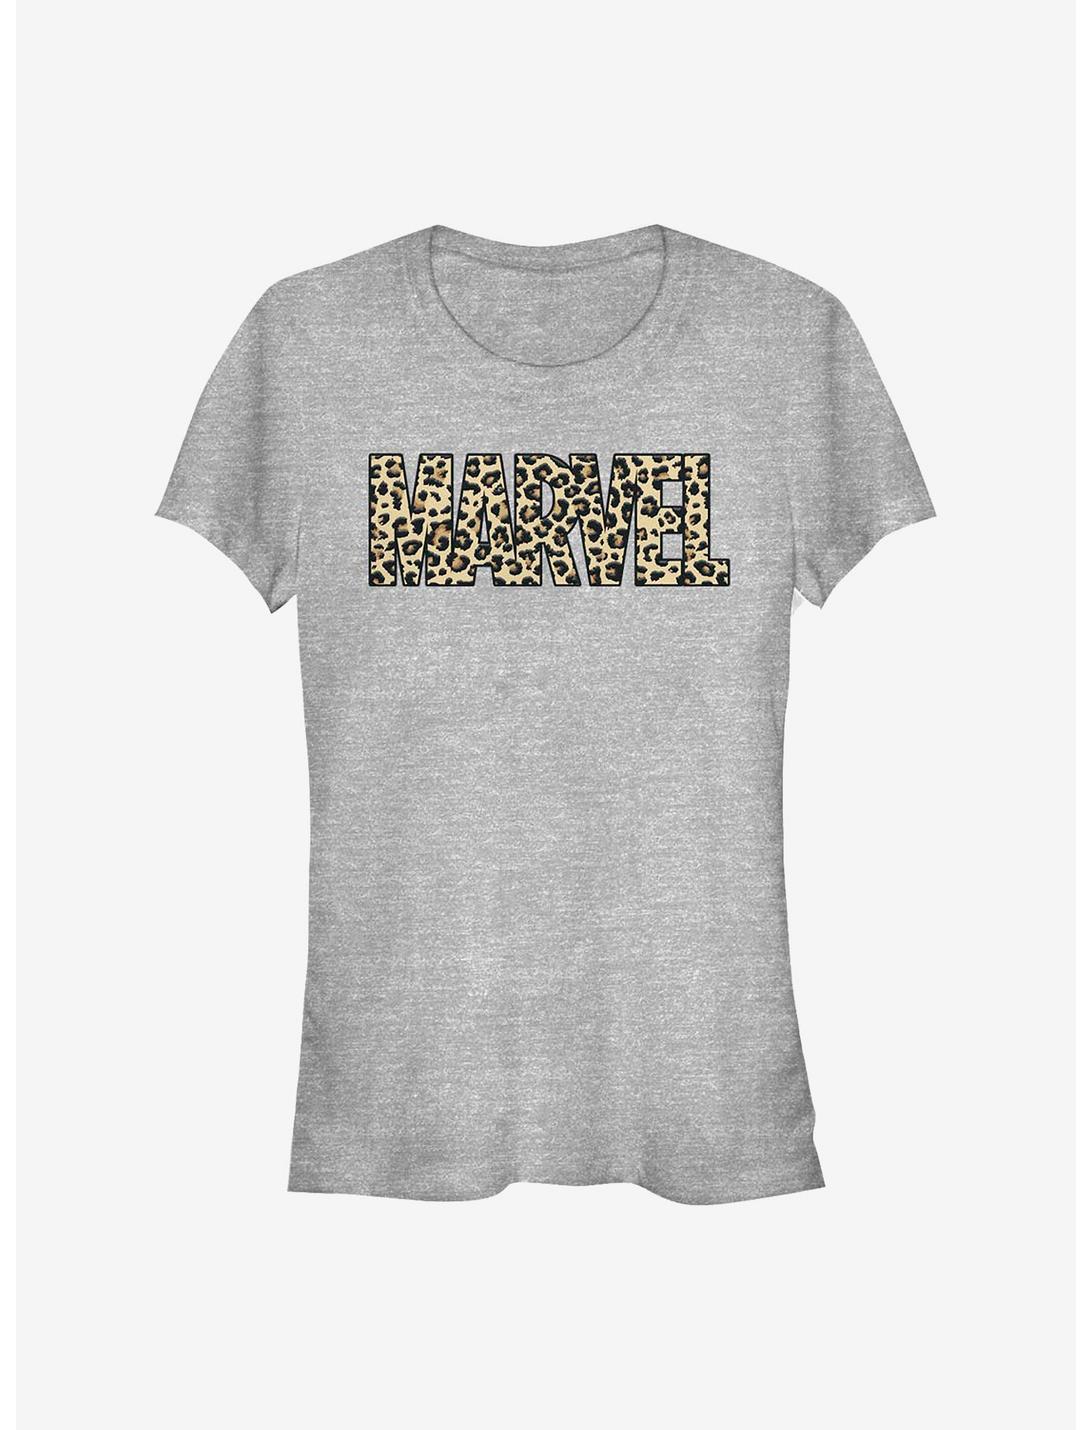 Marvel Leopard Girls T-Shirt, ATH HTR, hi-res